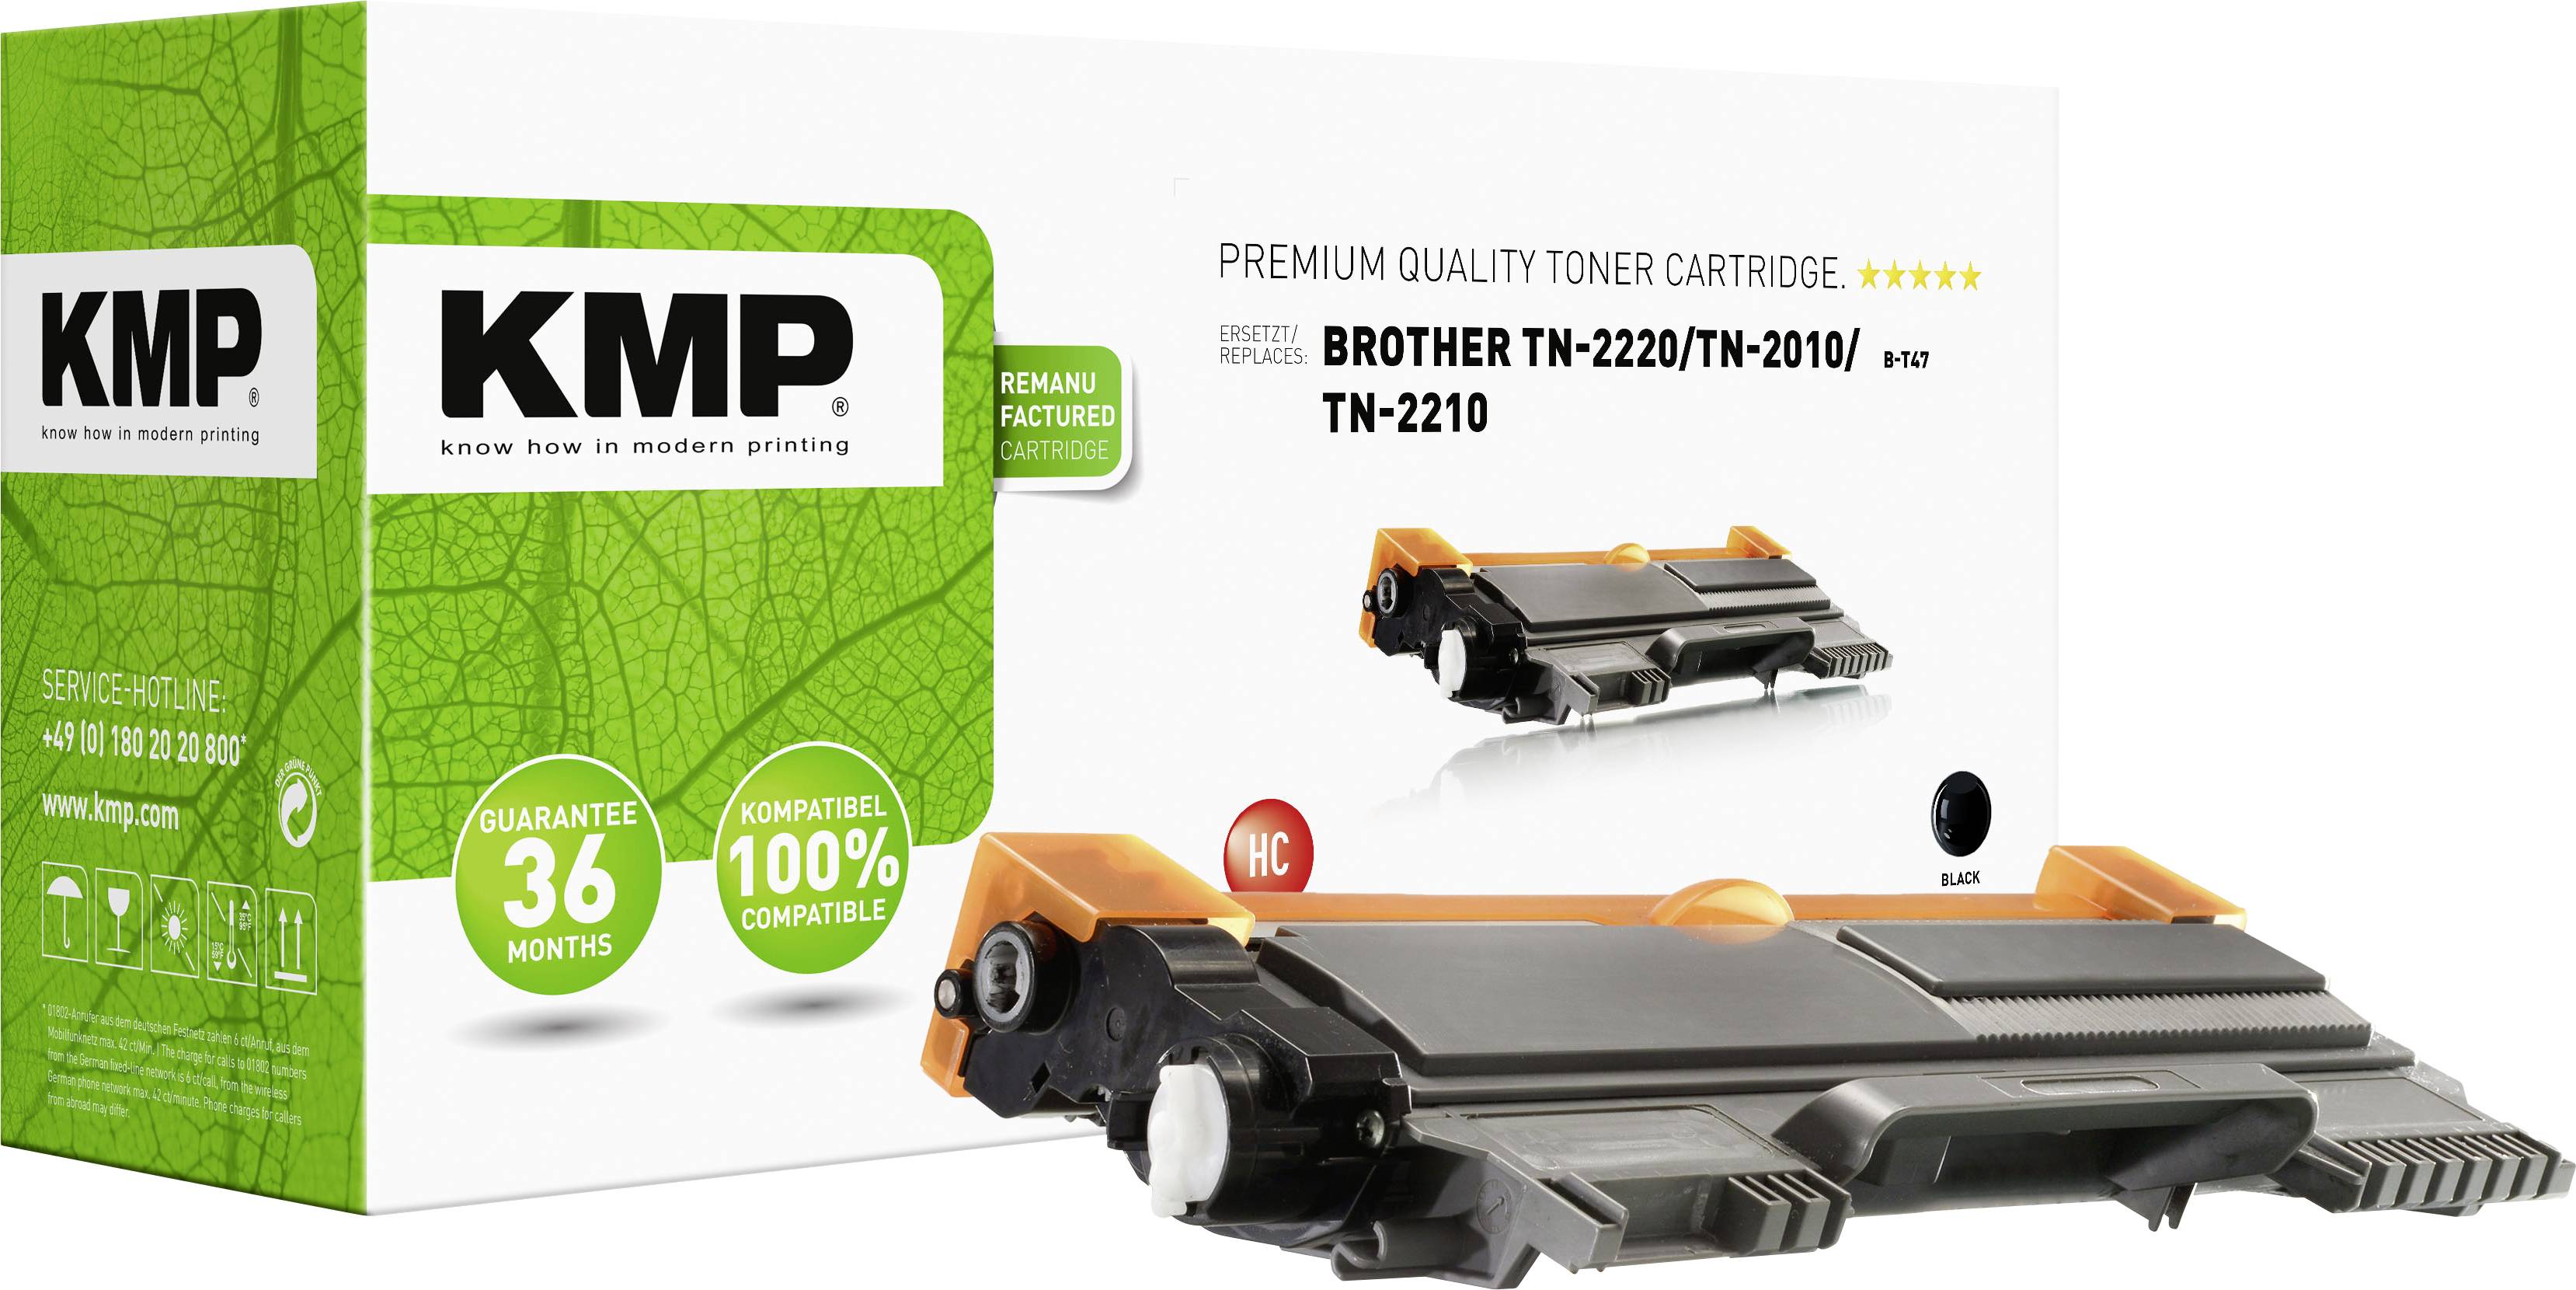 KMP Toner cartridge replaced Brother TN-2010, TN-2210, TN-2220, TN2010, TN2210, TN2220 Black 2600 Sides B-T47 | Conrad.com